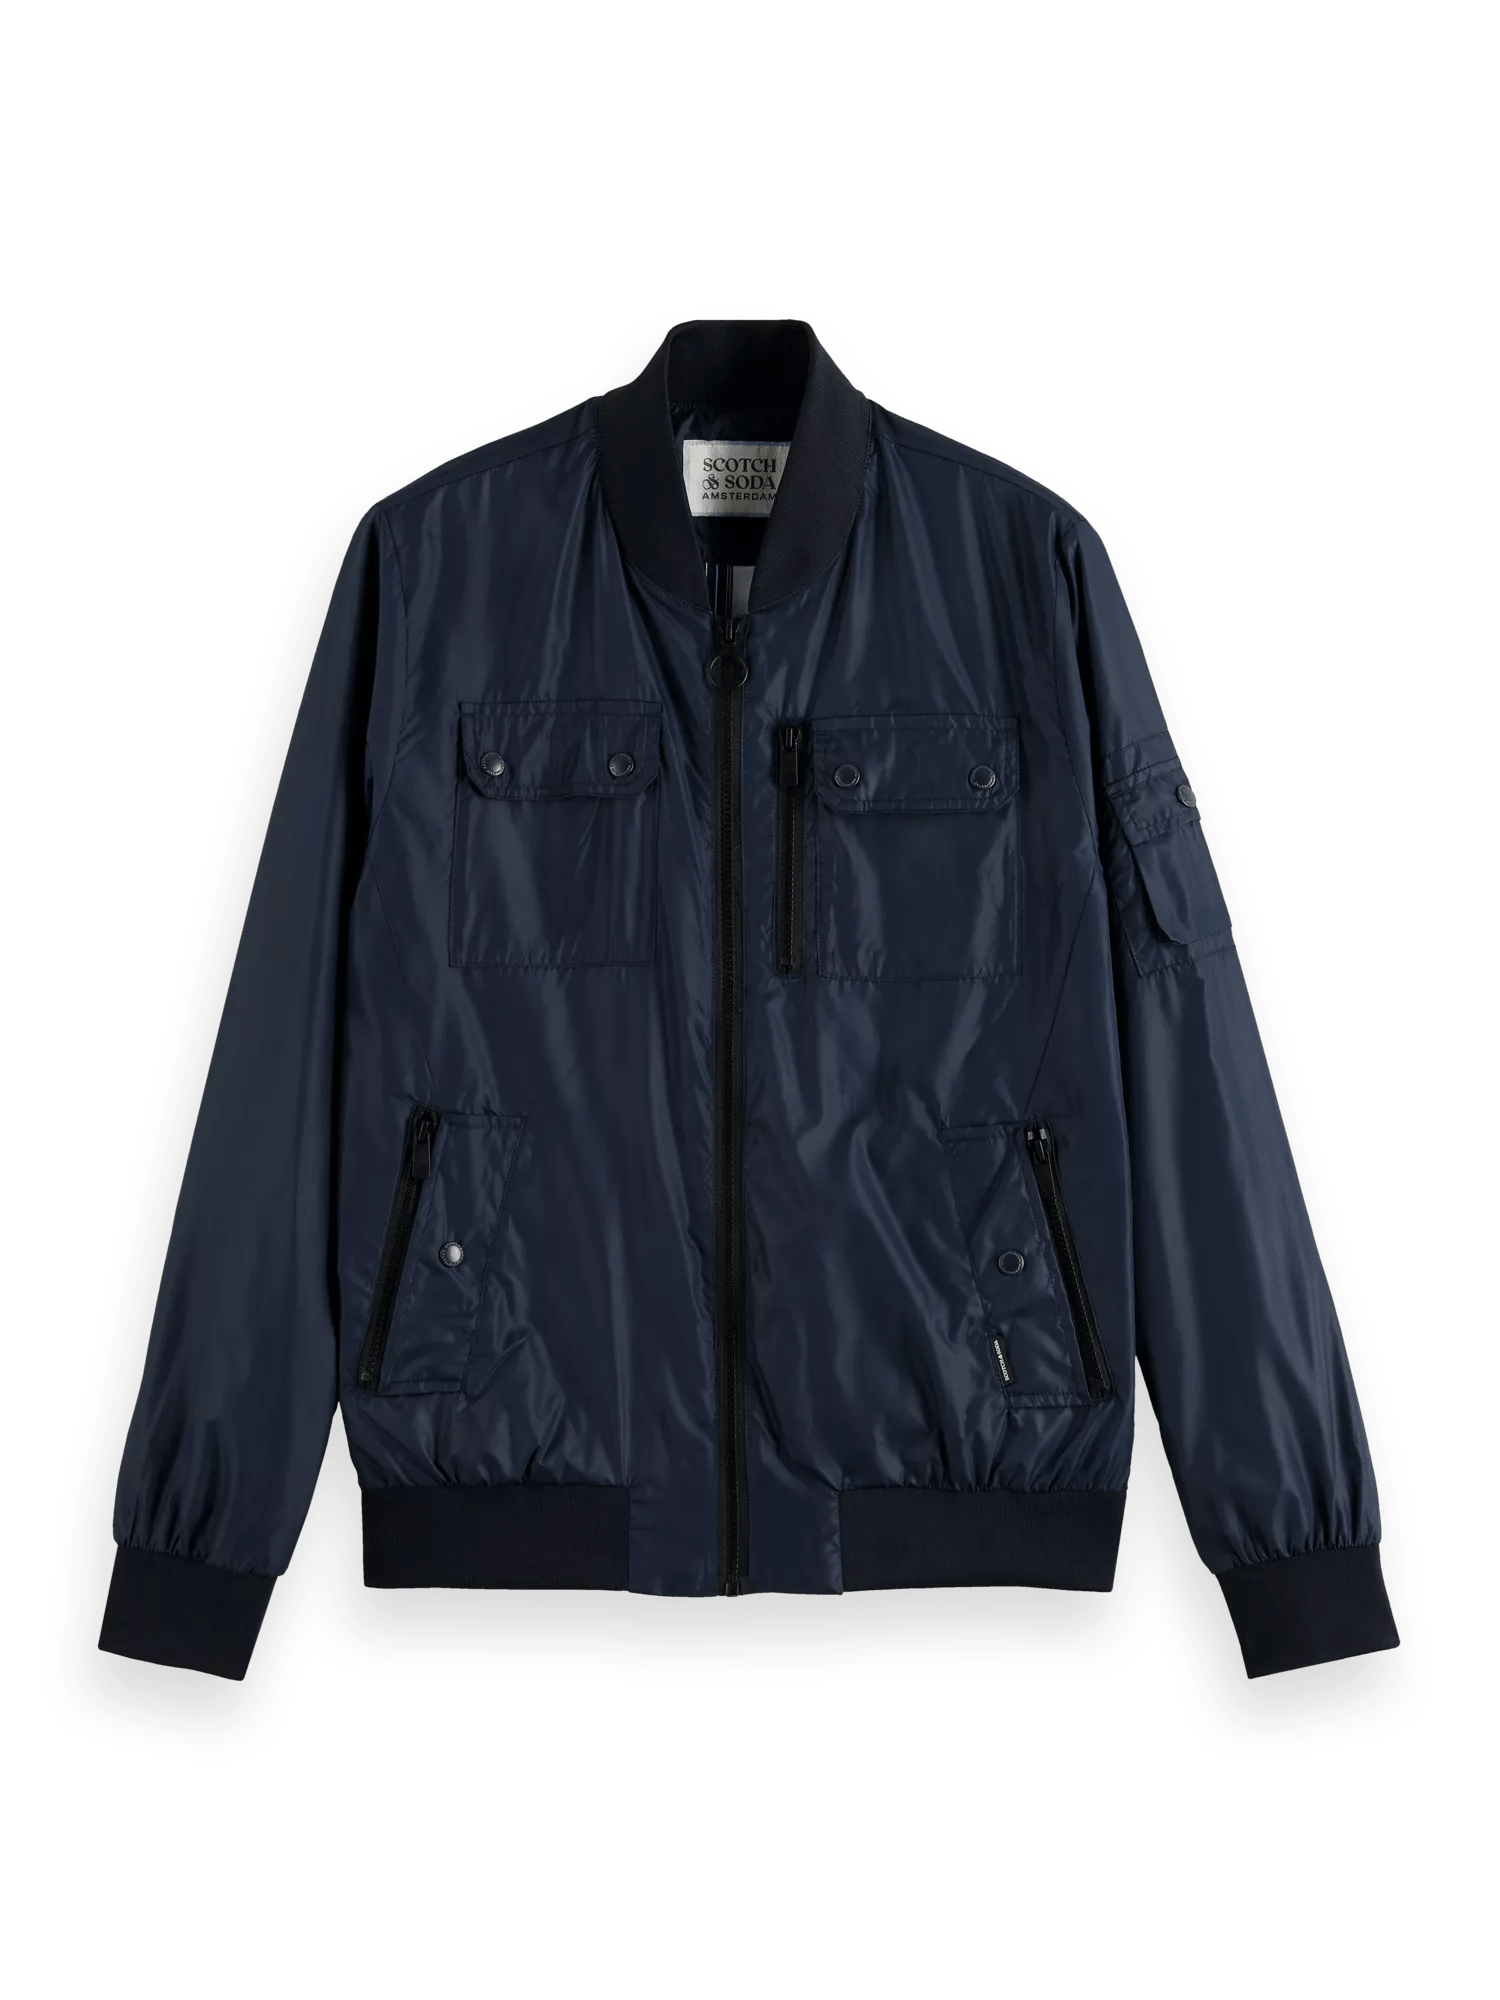 Pocketed bomber jacket